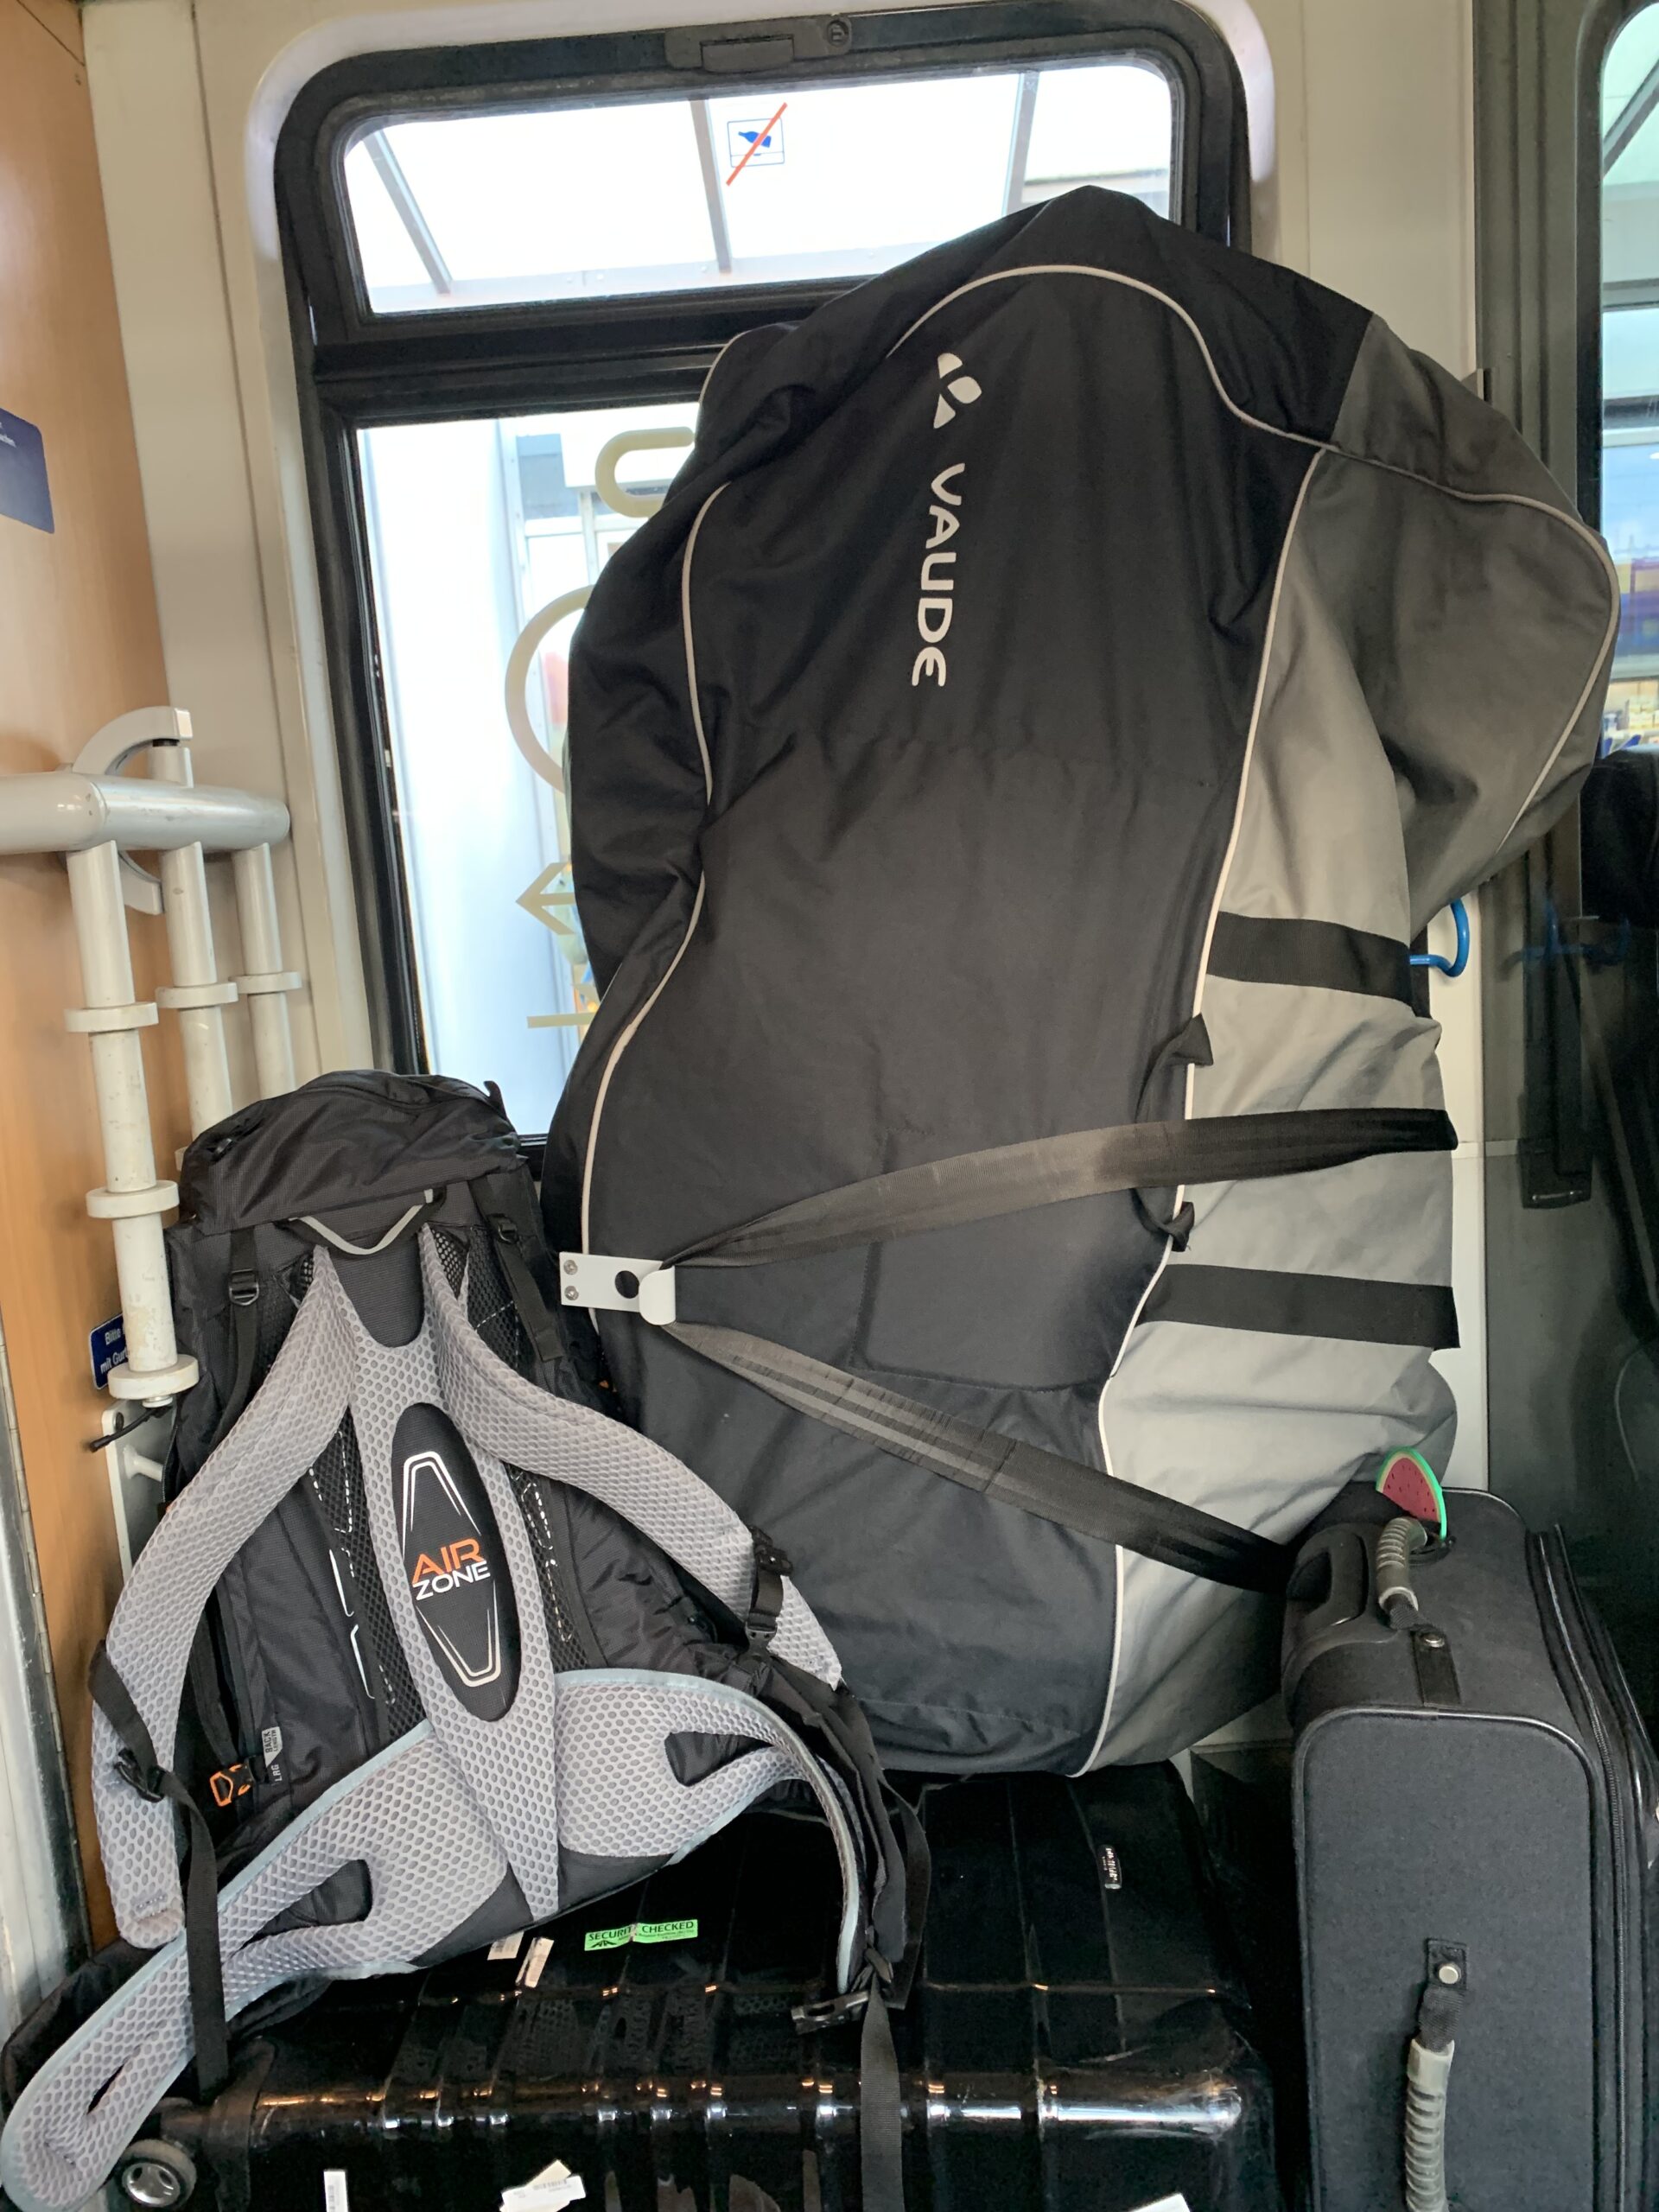 Fiets in fietshoes en andere bagage in een bagagerek van de DB Deutsche Bahn trein in Duitsland.